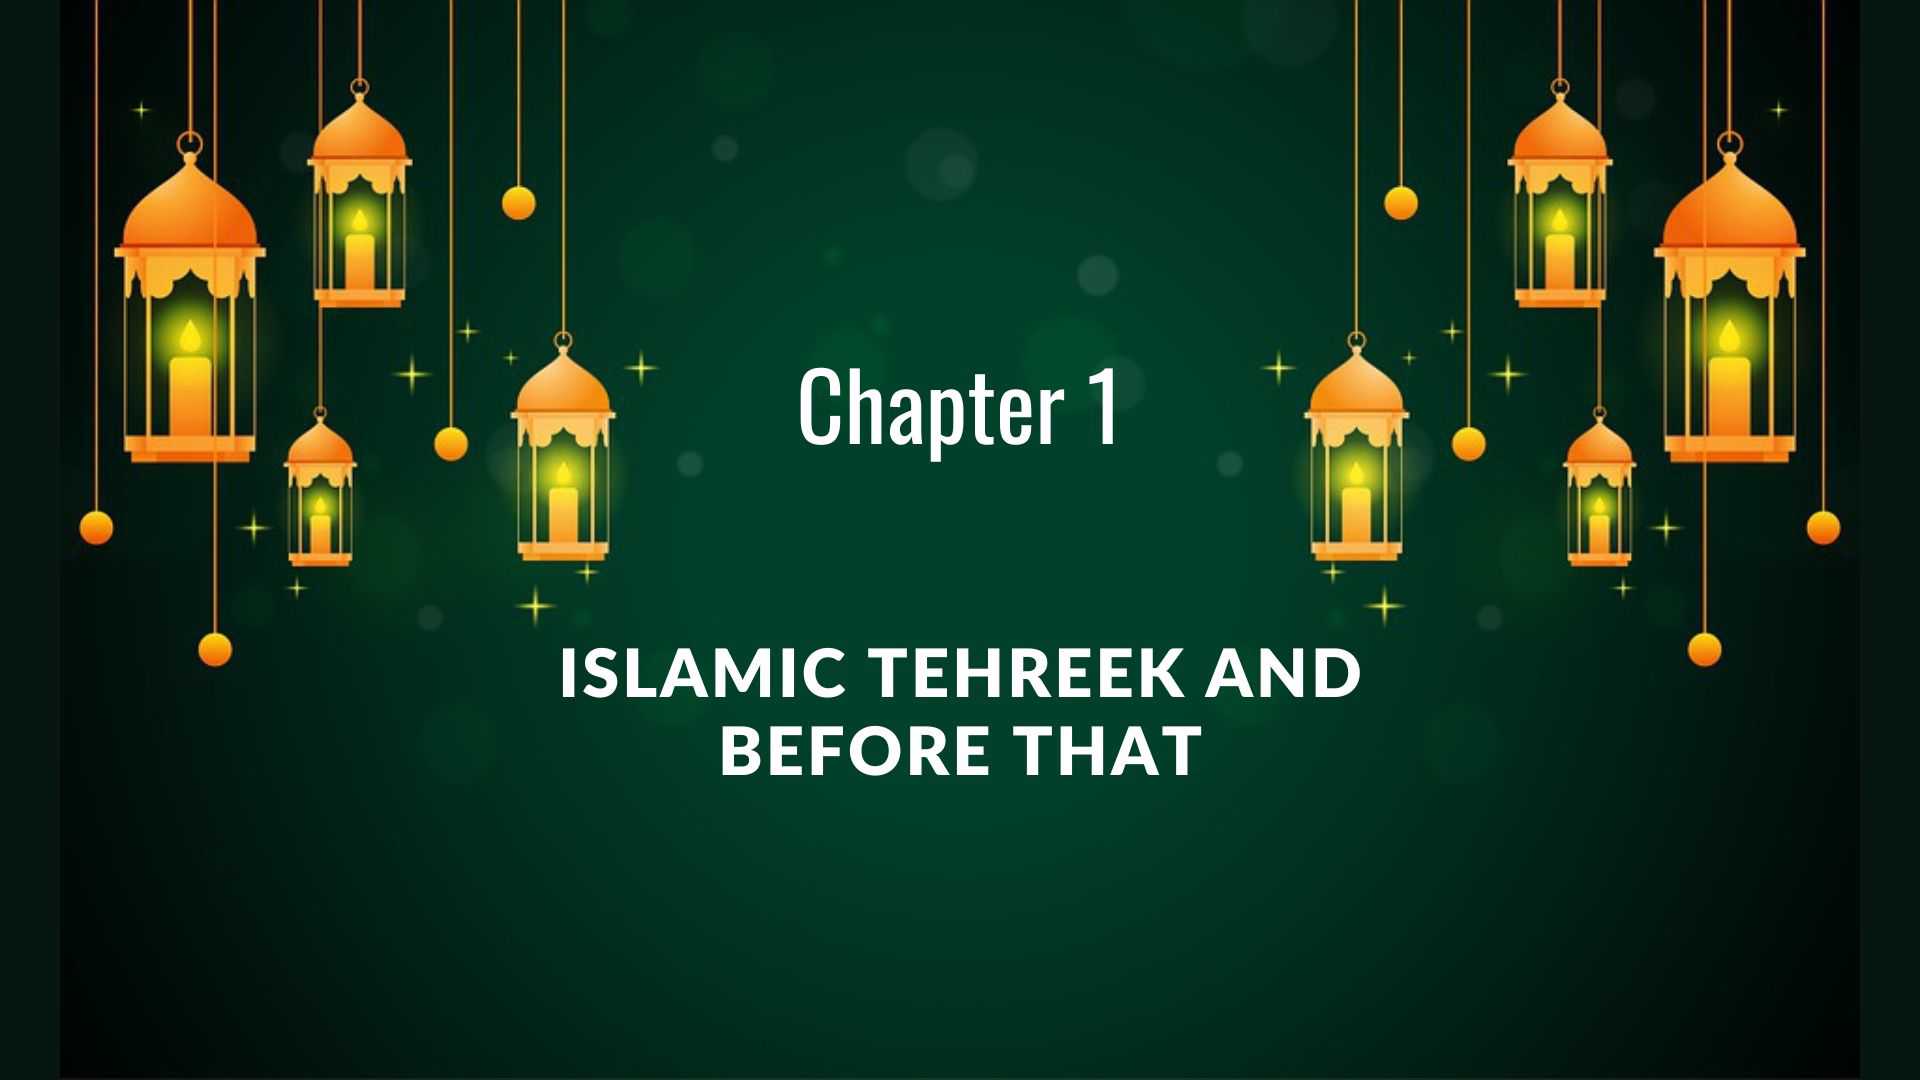 Chapter 1: Islamic Tehreek and before that (Tehreek e Islam)